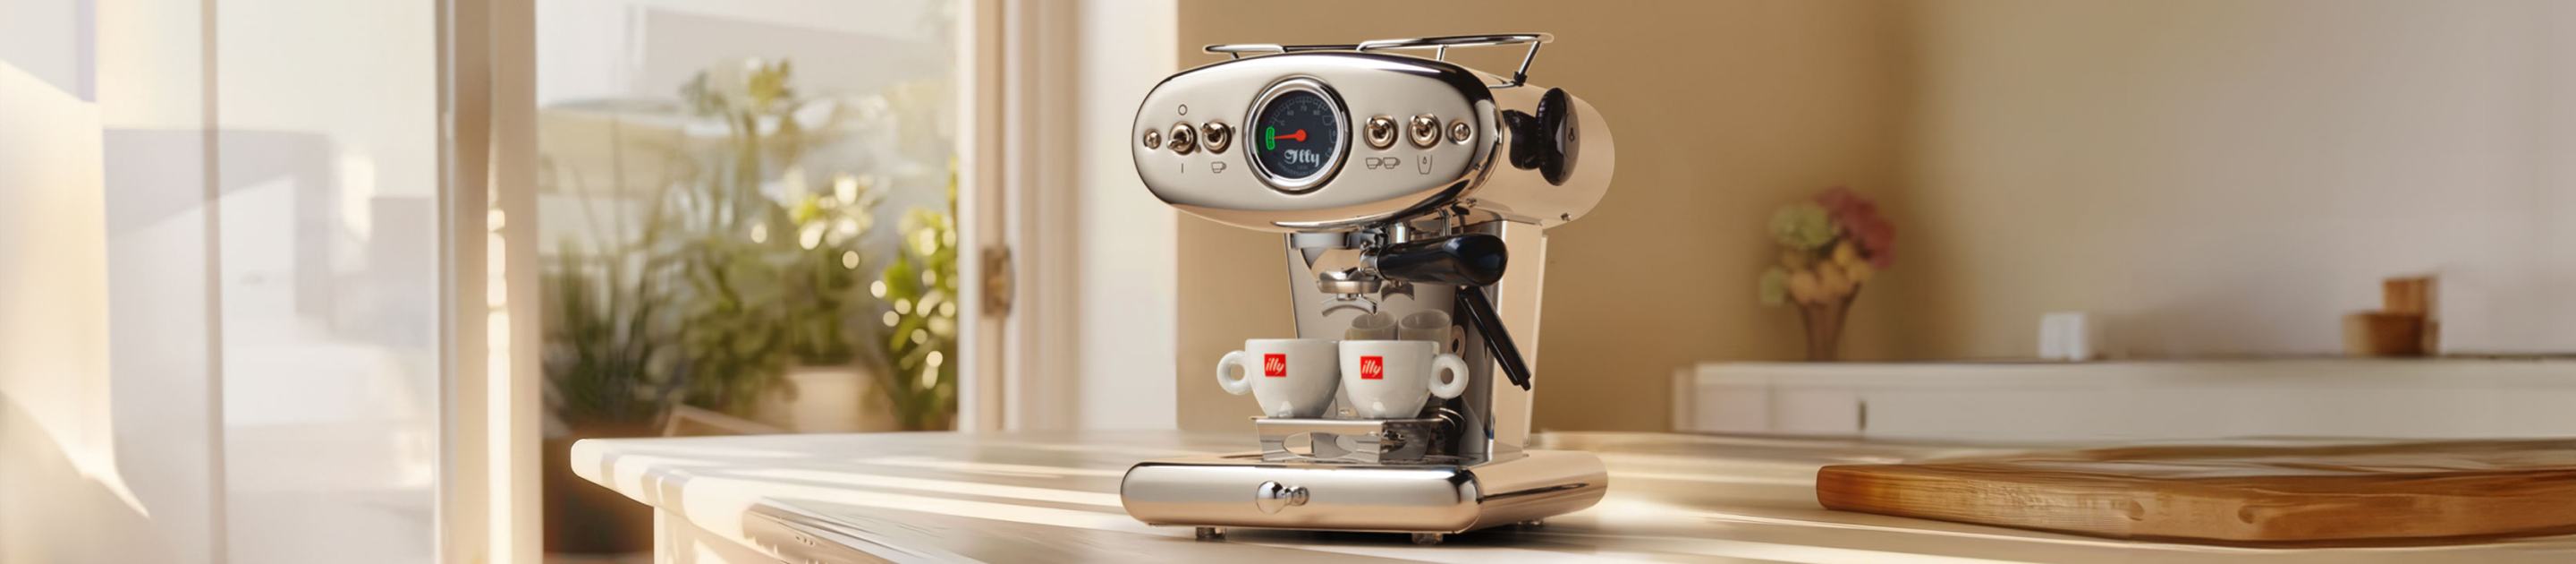 Machines voor gemalen koffie en E.S.E.-koffiepads